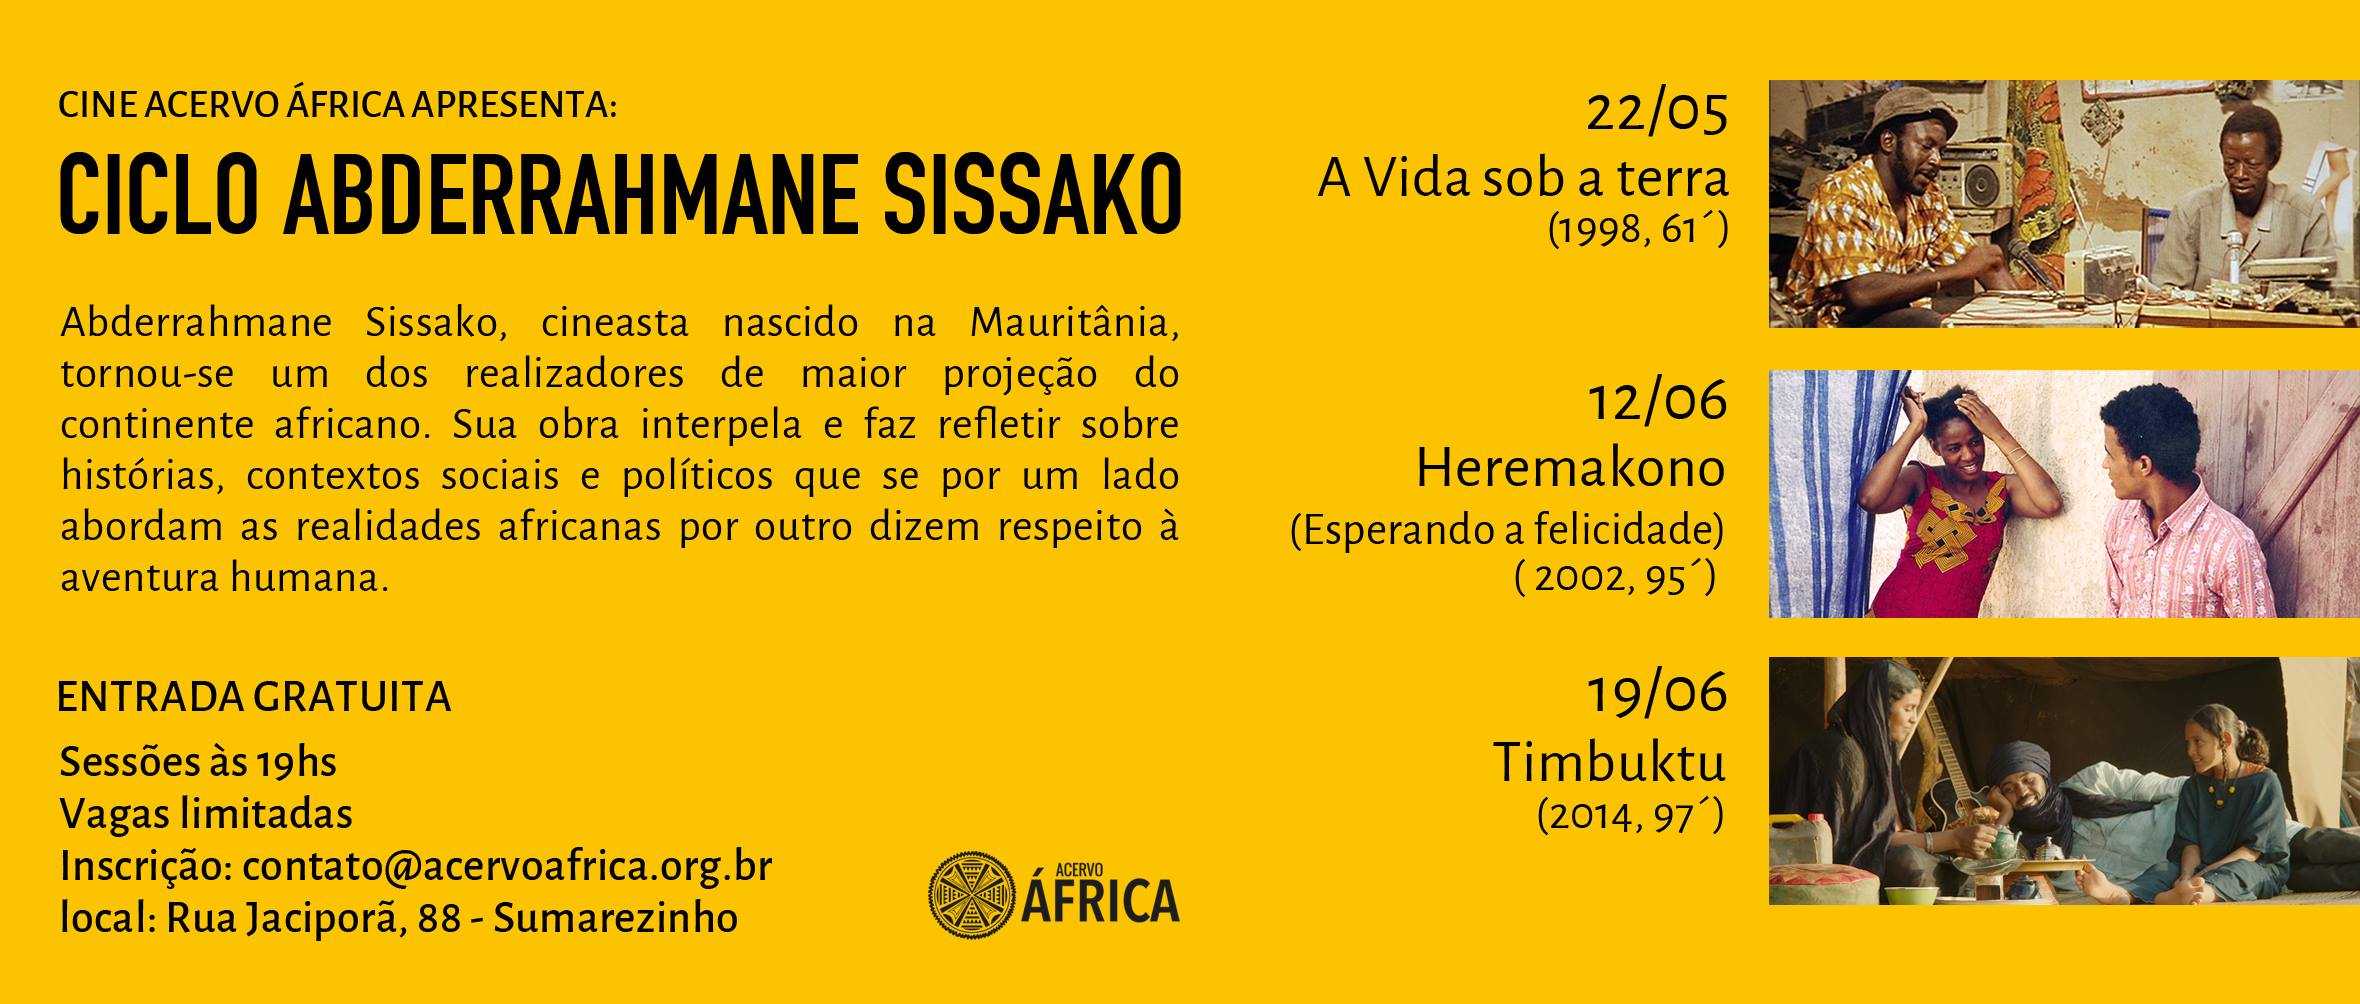 Cine Acervo África – Ciclo Abderrahmane Sissako